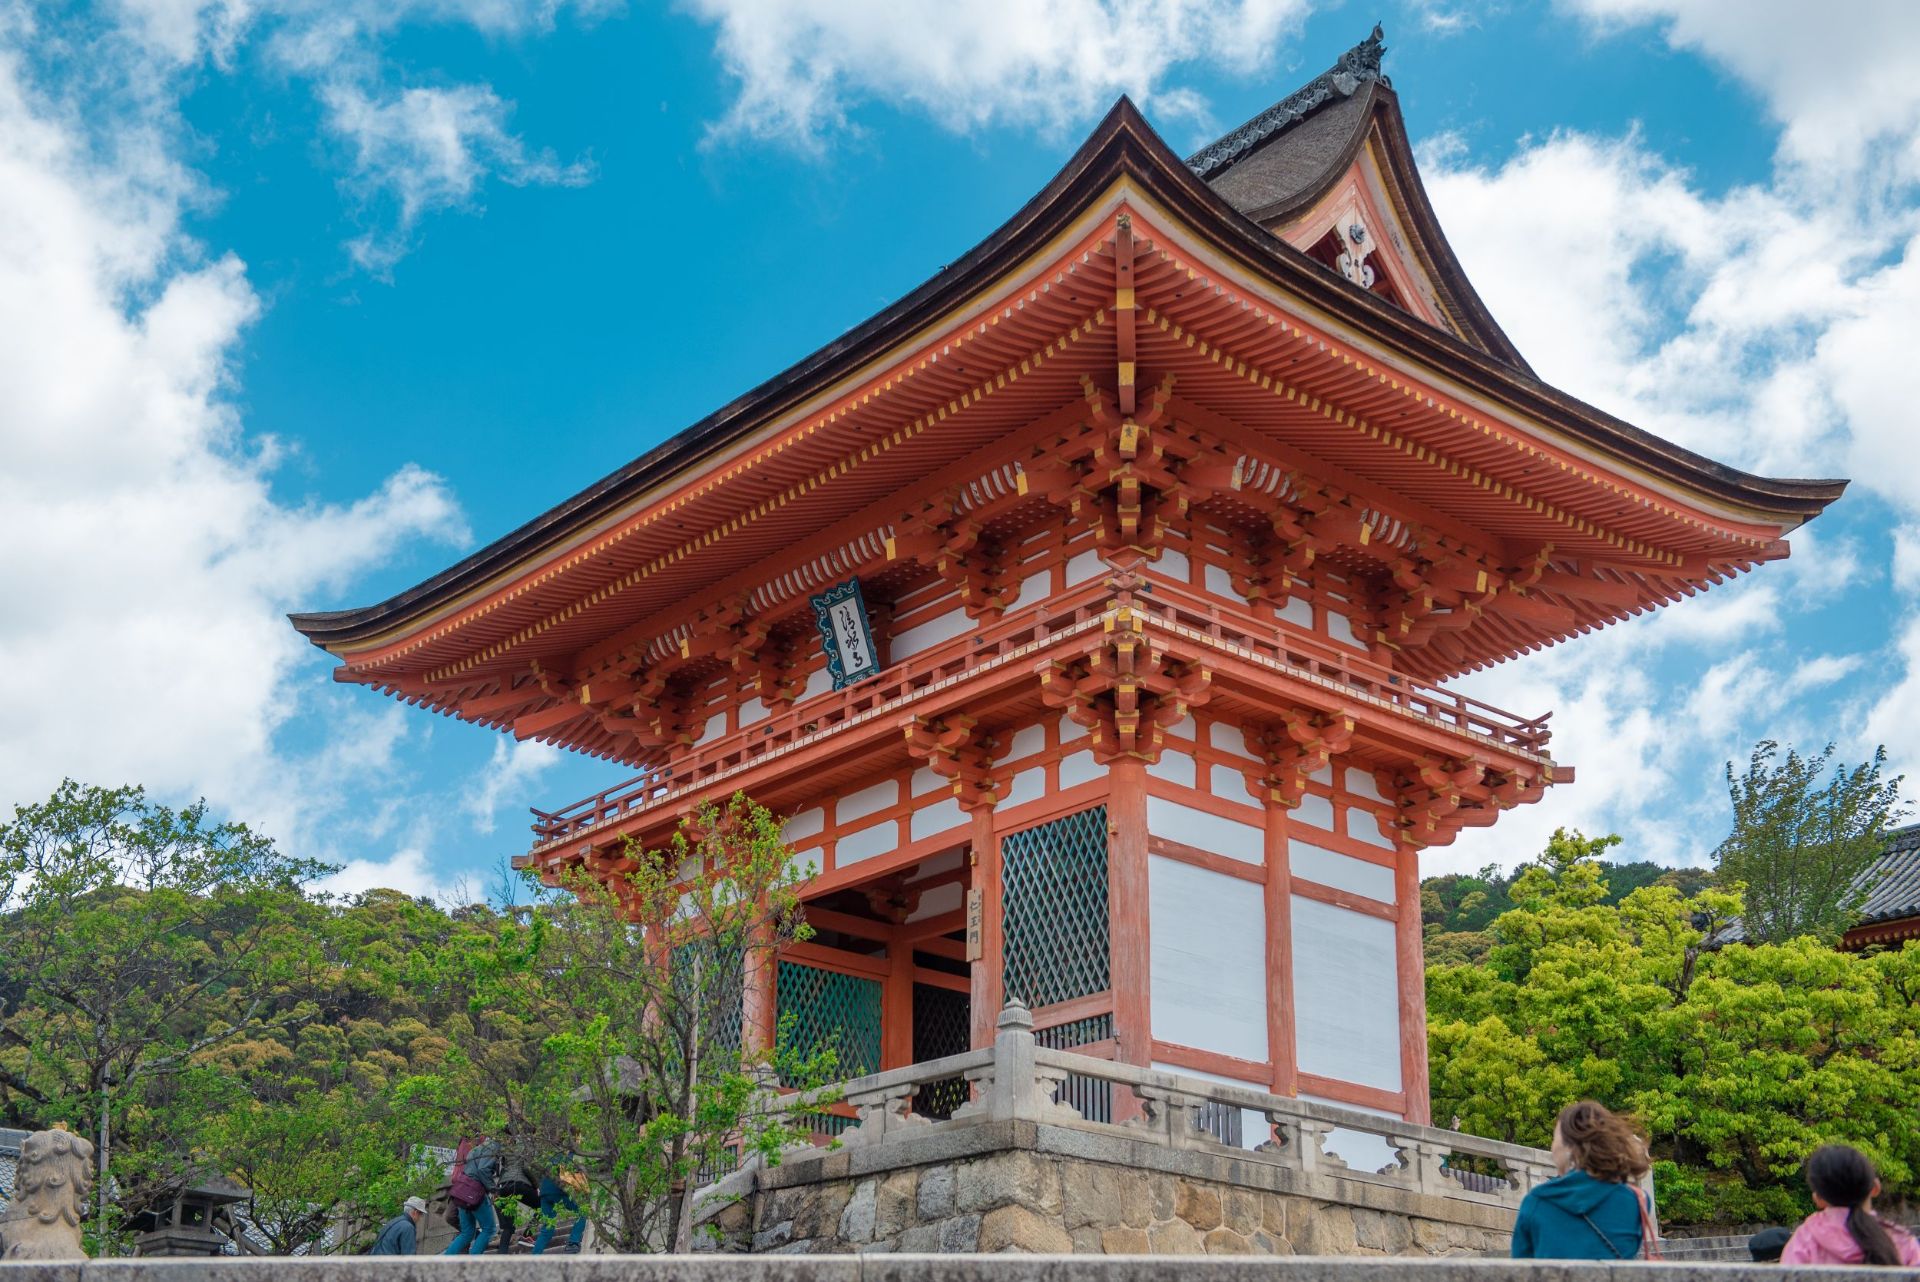 清水寺 位于 京都 音羽山，是京都最古老的寺庙，早早被列入了文化遗产名录。 地主神社 位于清水寺庙内